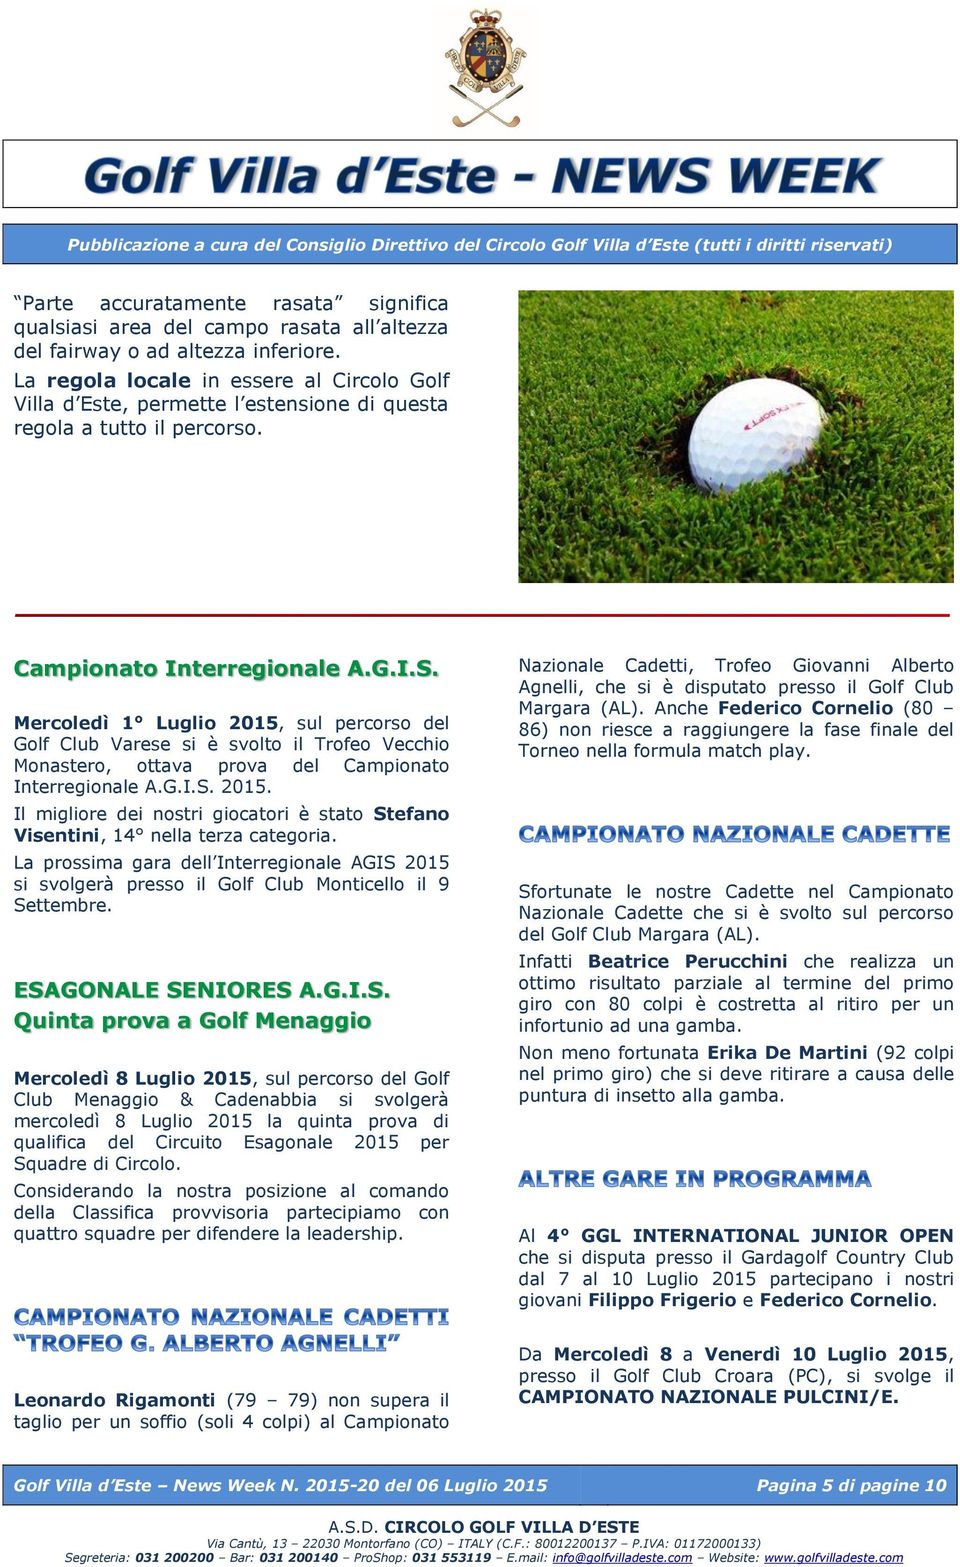 Mercoledì 1 Luglio 2015, sul percorso del Golf Club Varese si è svolto il Trofeo Vecchio Monastero, ottava prova del Campionato Interregionale A.G.I.S. 2015. Il migliore dei nostri giocatori è stato Stefano Visentini, 14 nella terza categoria.